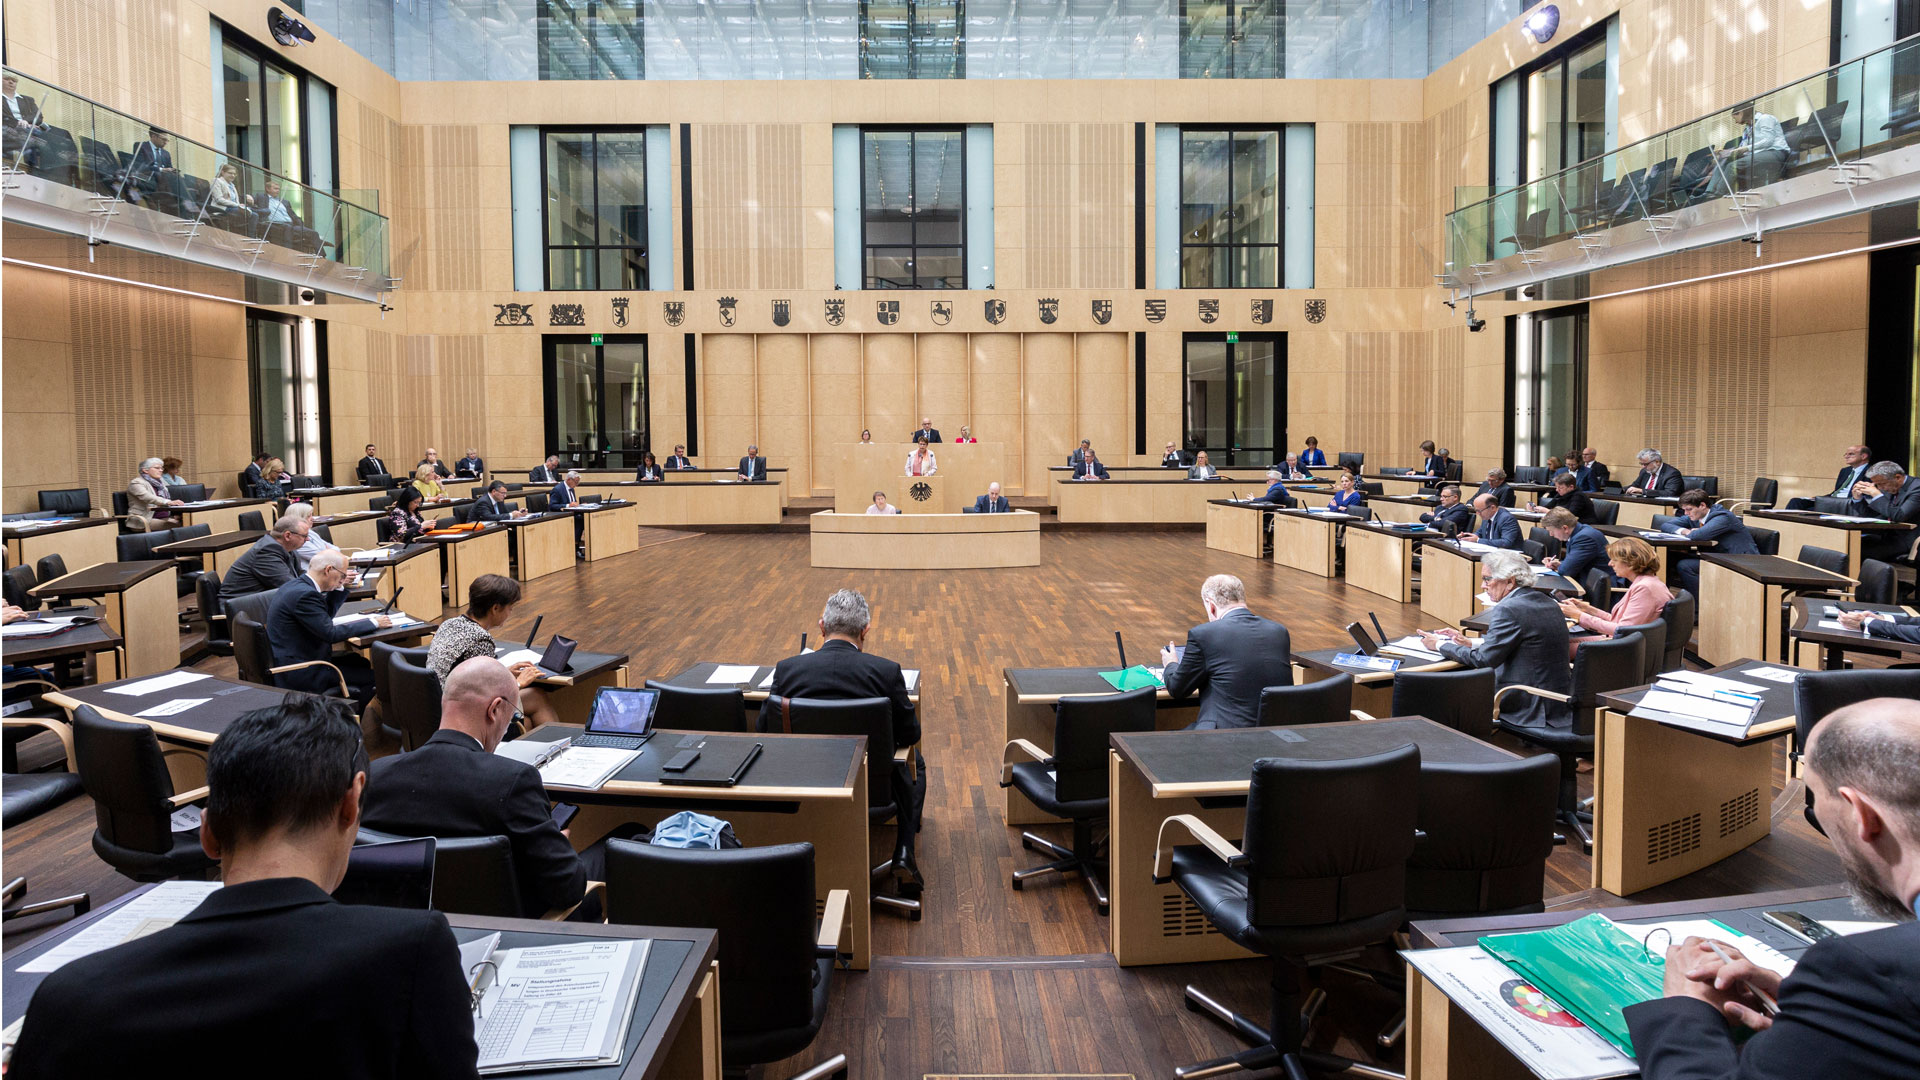 Konversionsbehandlungen zur sexuellen Umorientierung von Homosexuellen und Transgeschlechtlichen werden in Deutschland verboten. Das sieht ein Beschluss des Bundesrates vor.